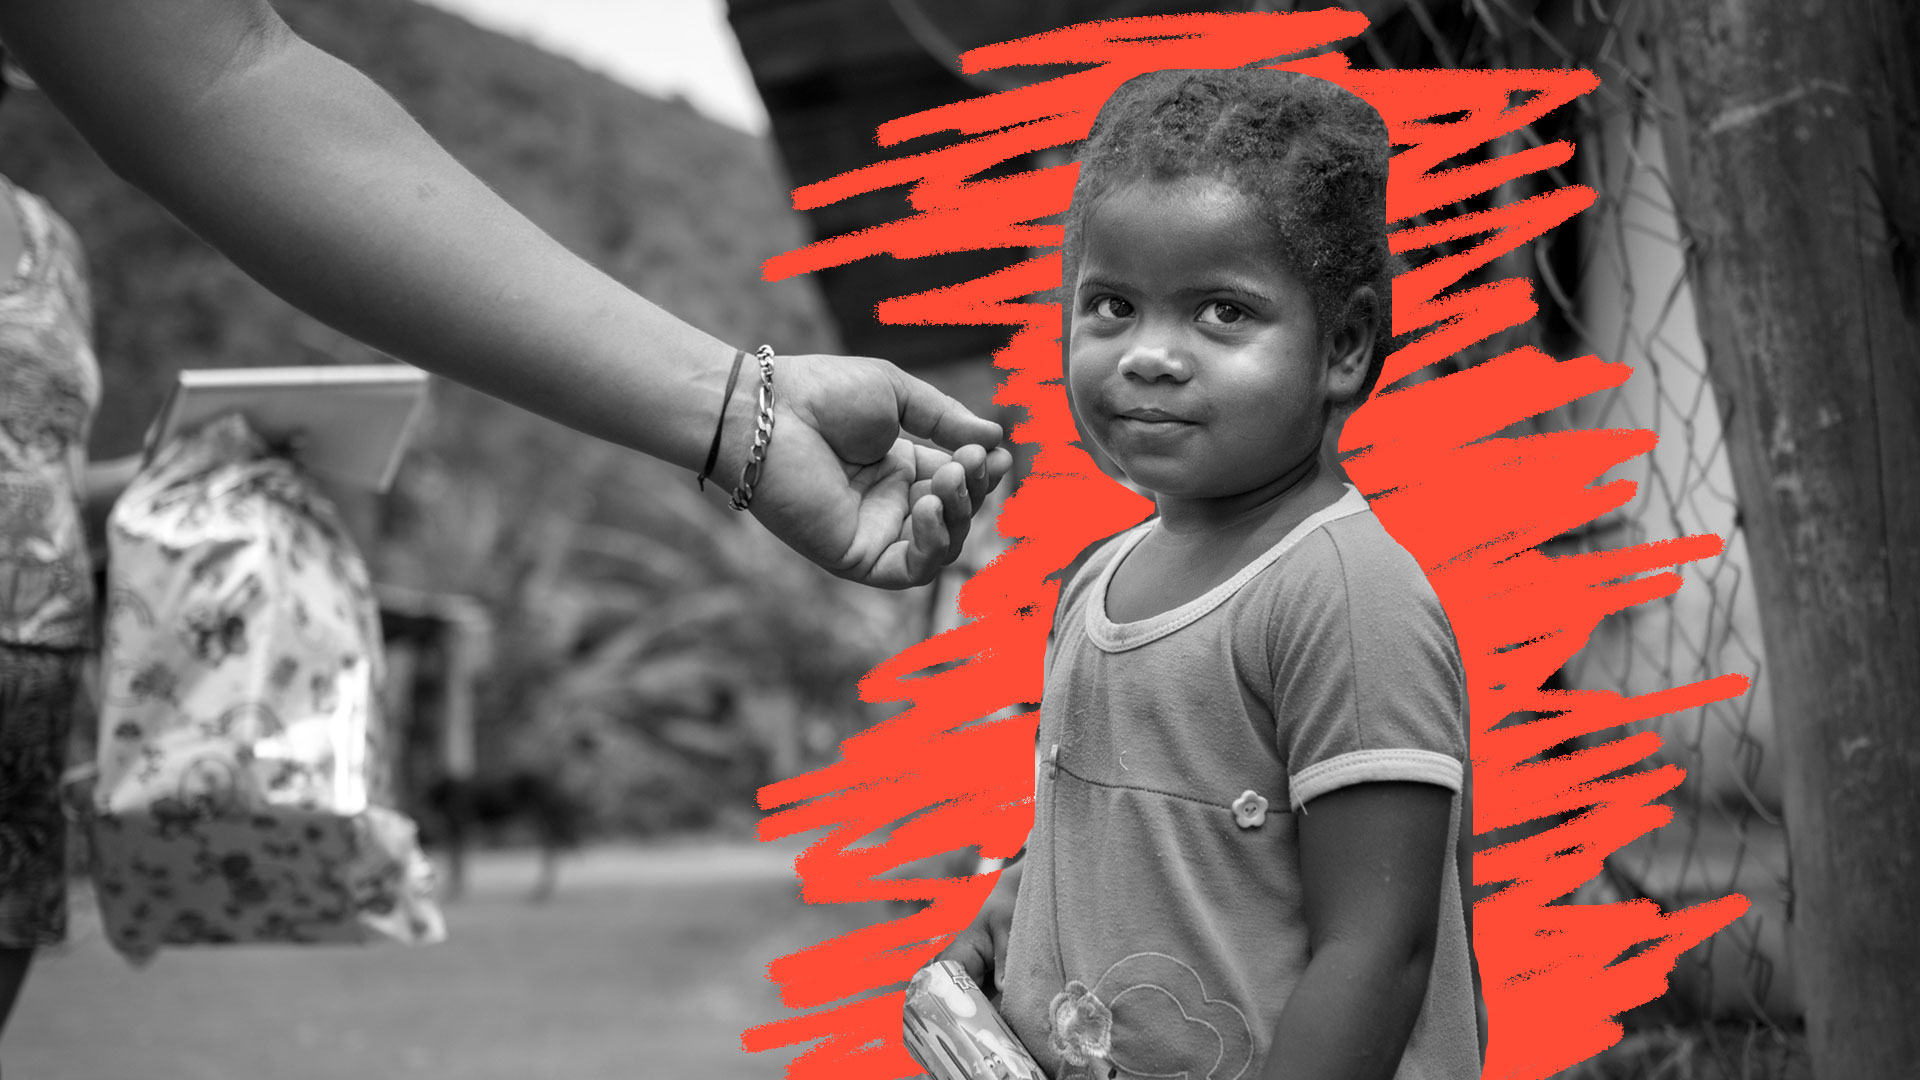 Desafios da infância e da adolescência: uma foto em preto e branco mostra uma criança triste e de roupas sujas. O cenário é de uma favela. Em sua direção, está a mão estendida de um adulto.